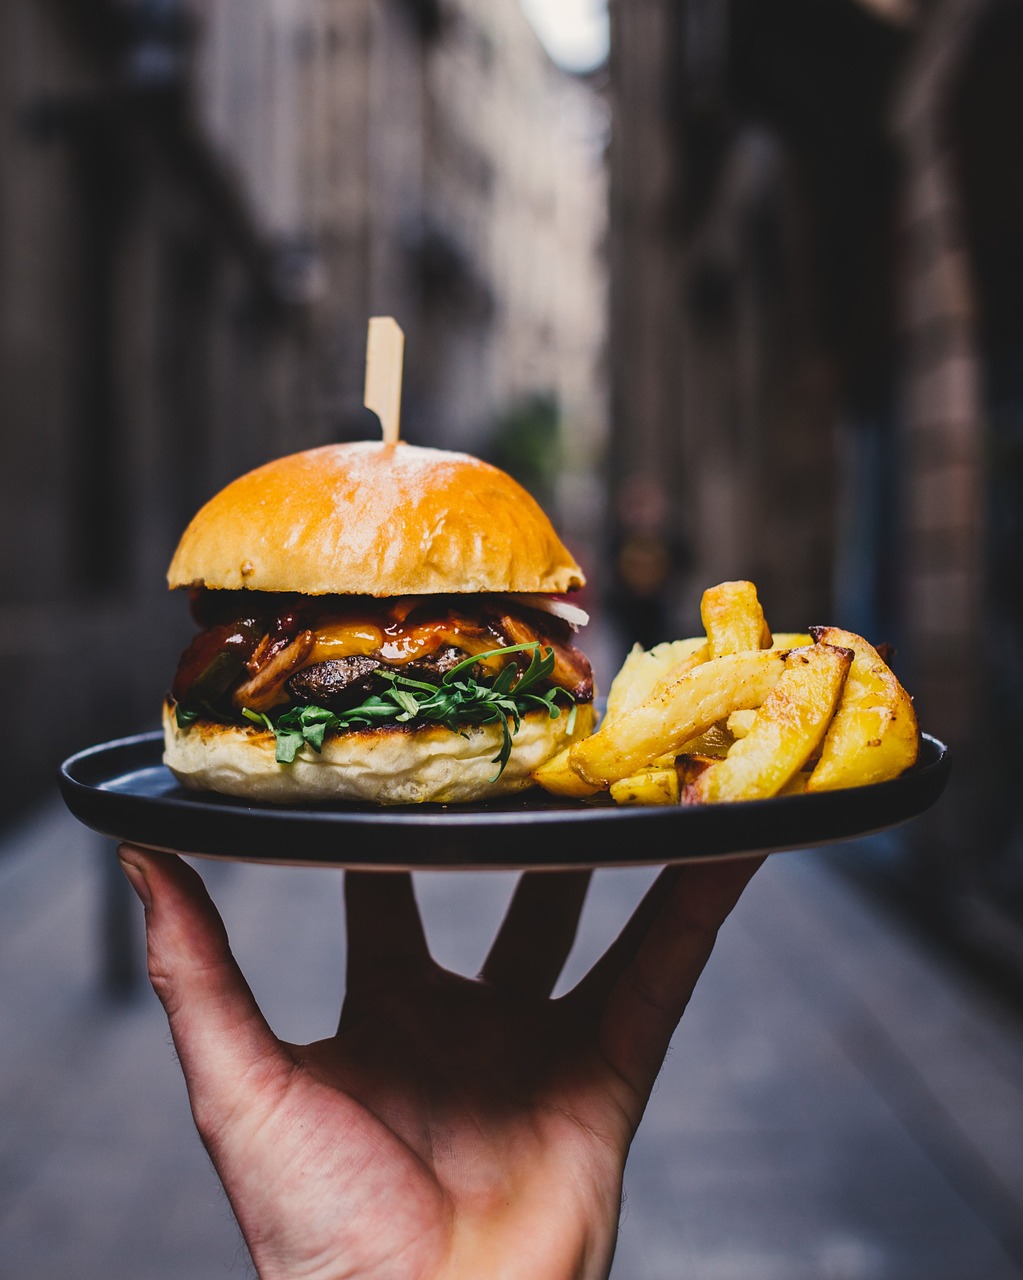 Un serveur s'apprête à servir une assiette avec un hamburger et des frites | Source : Pixabay